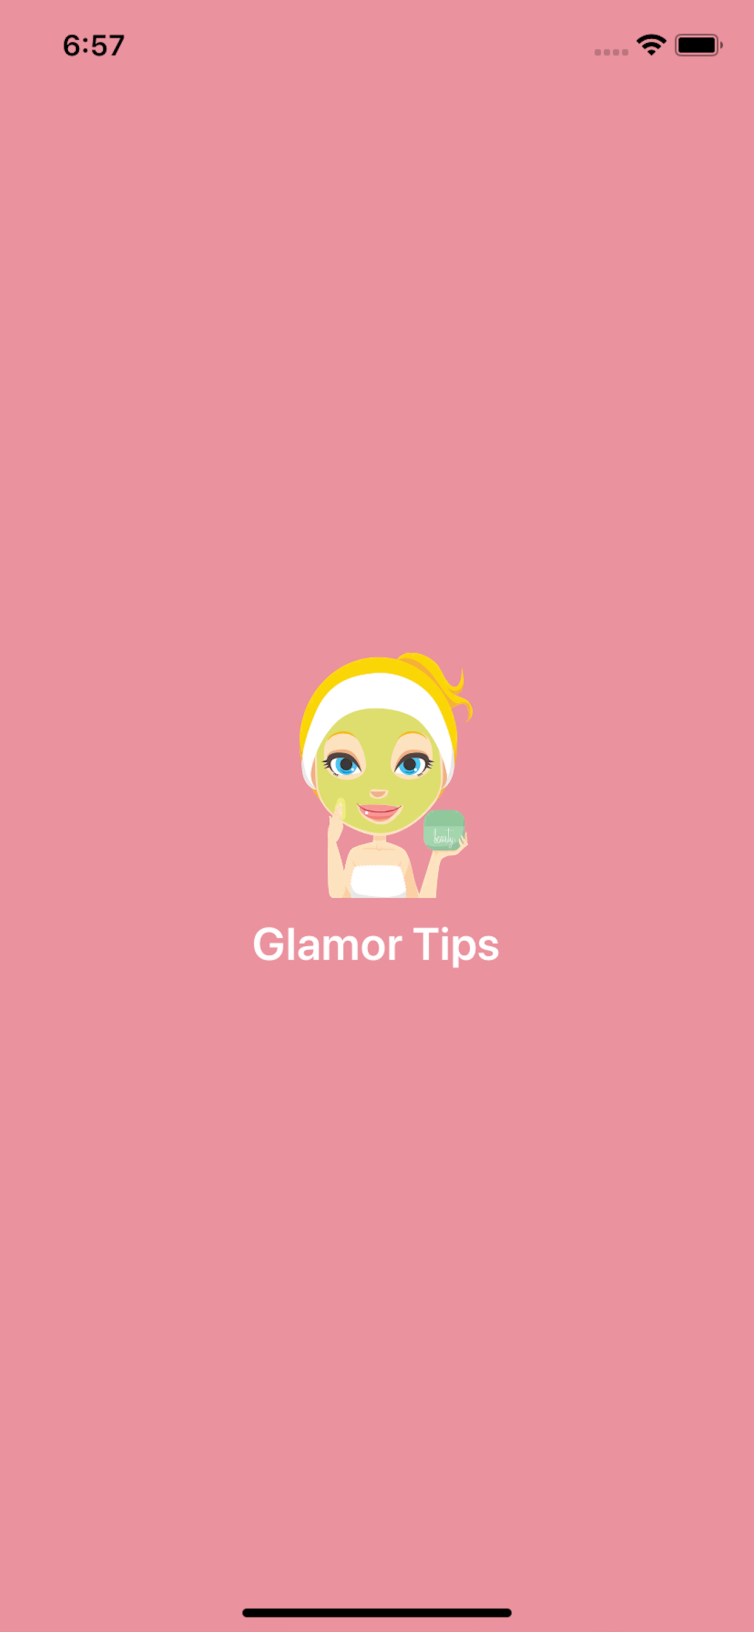 Glamor Tips Application